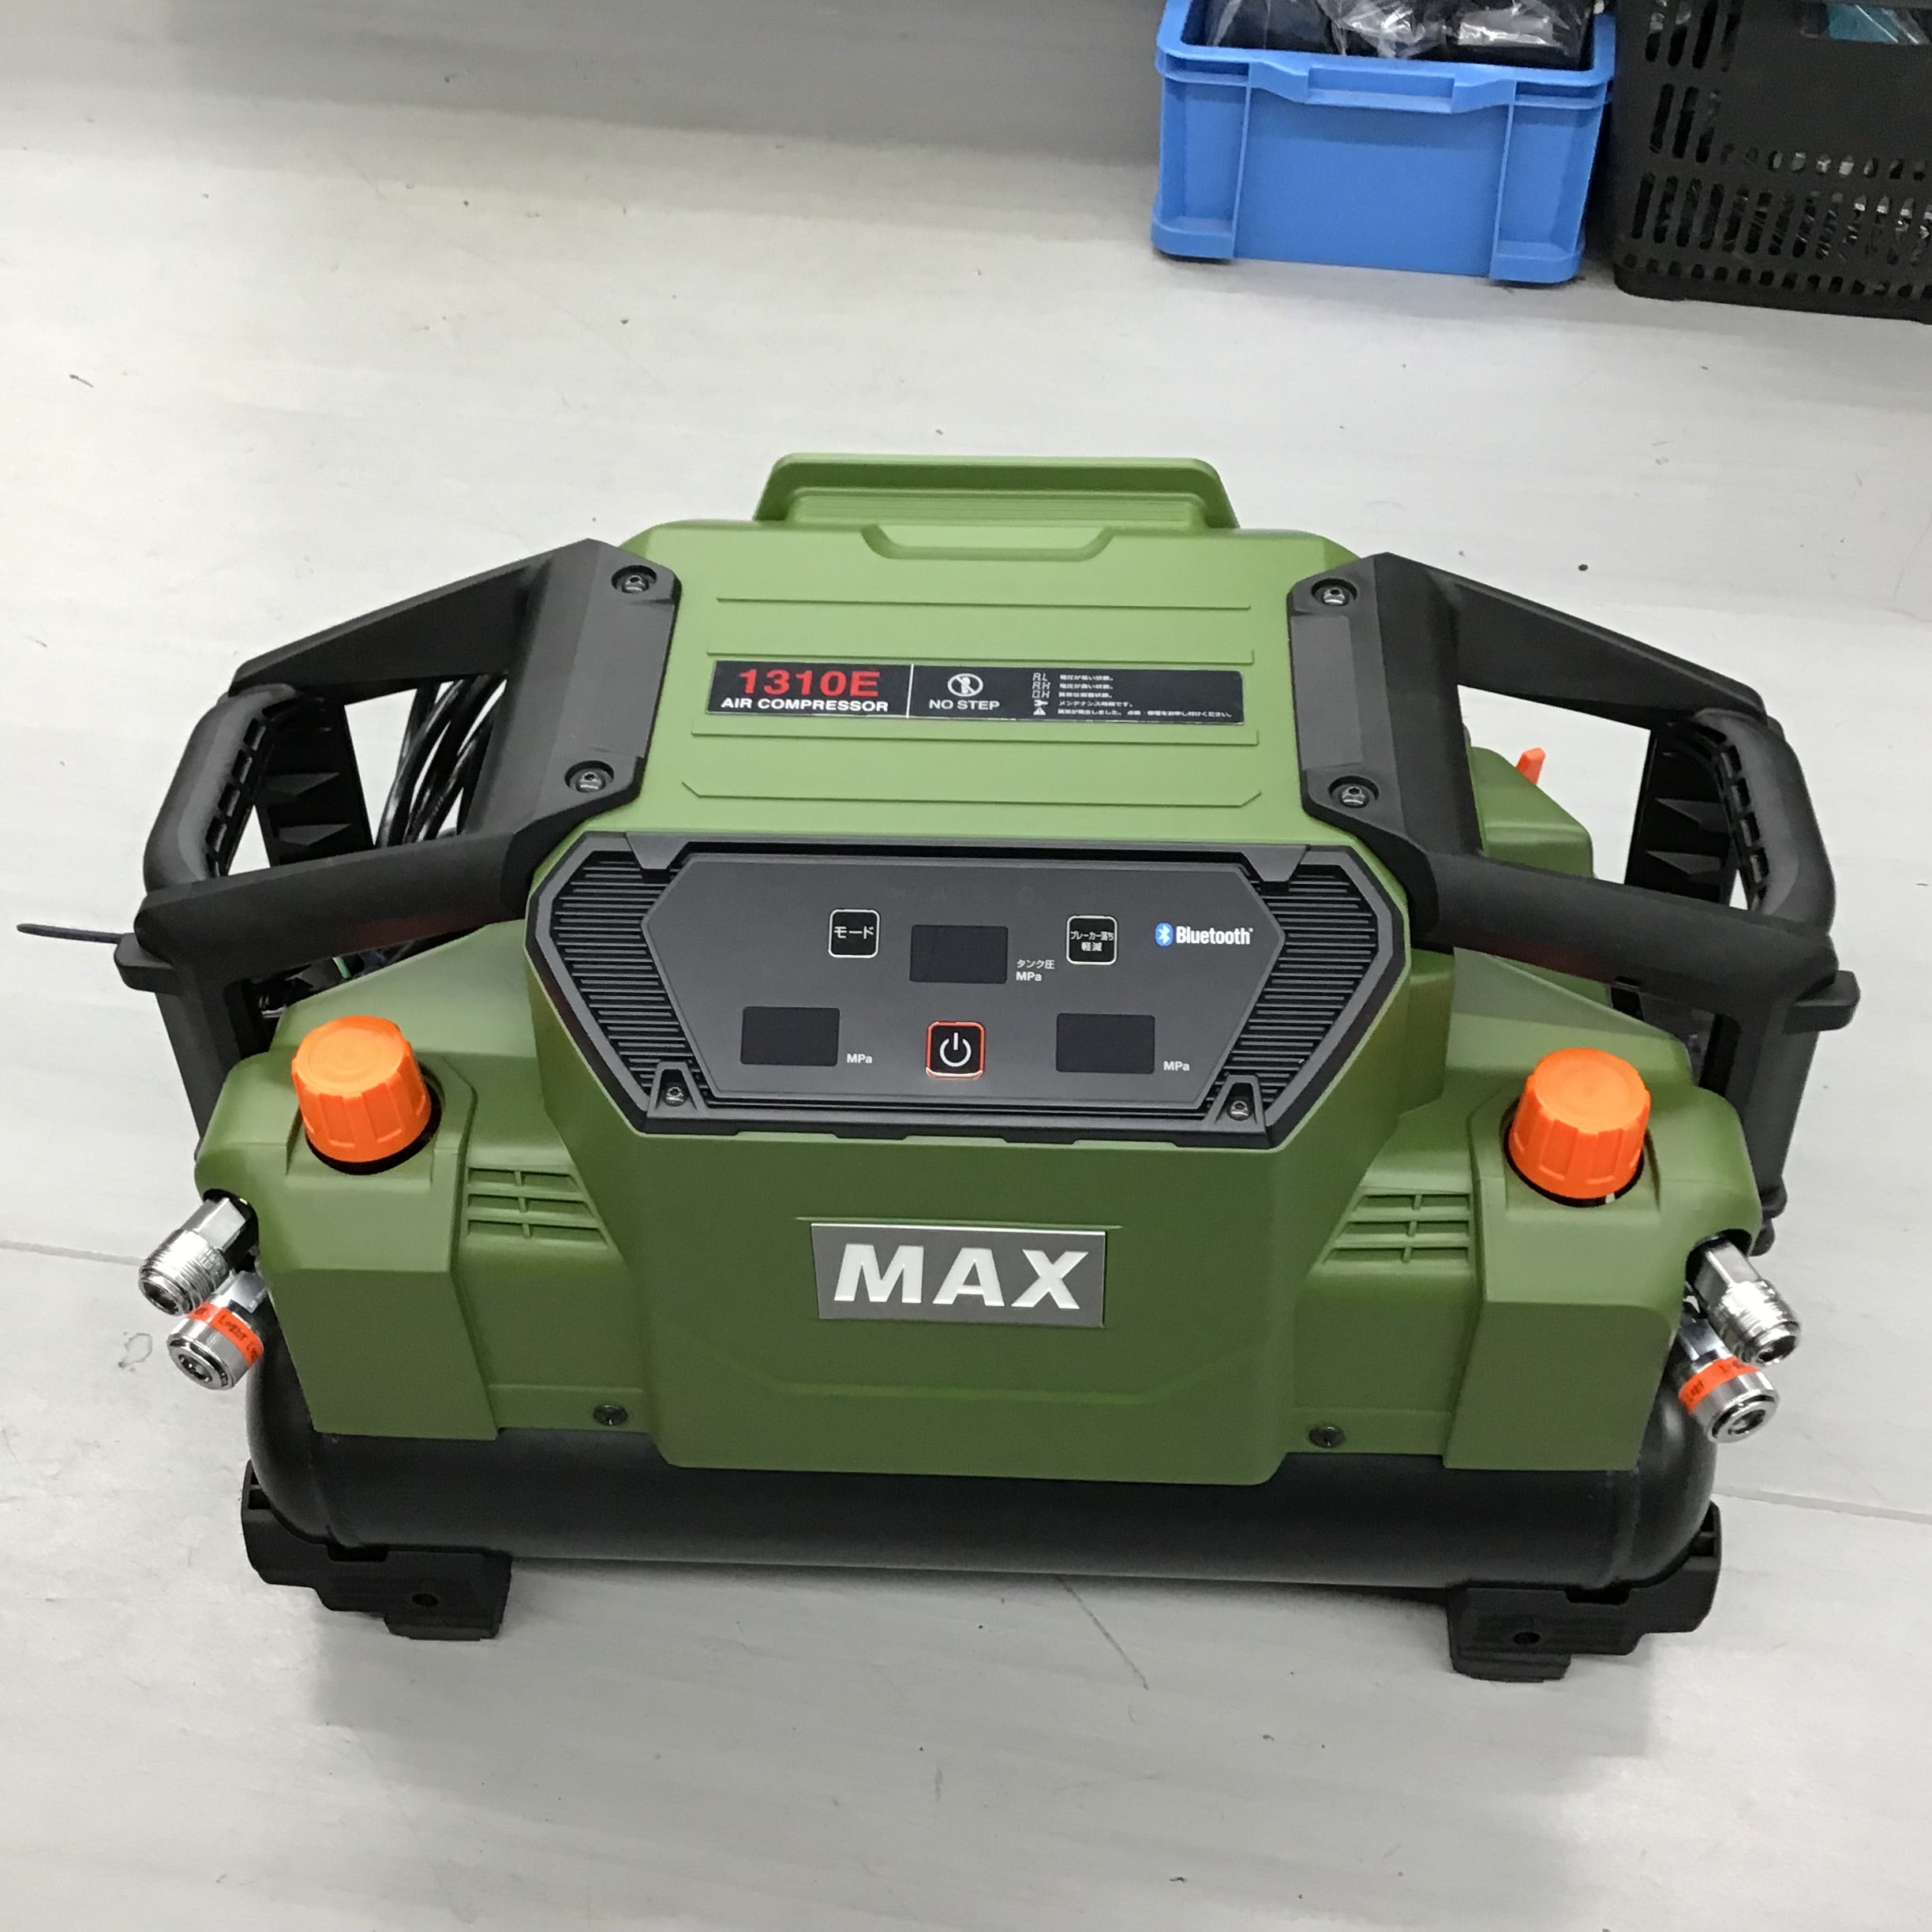 ☆マックス(MAX) エアコンプレッサー AK-HH1310E_ミリタリーグリーン 